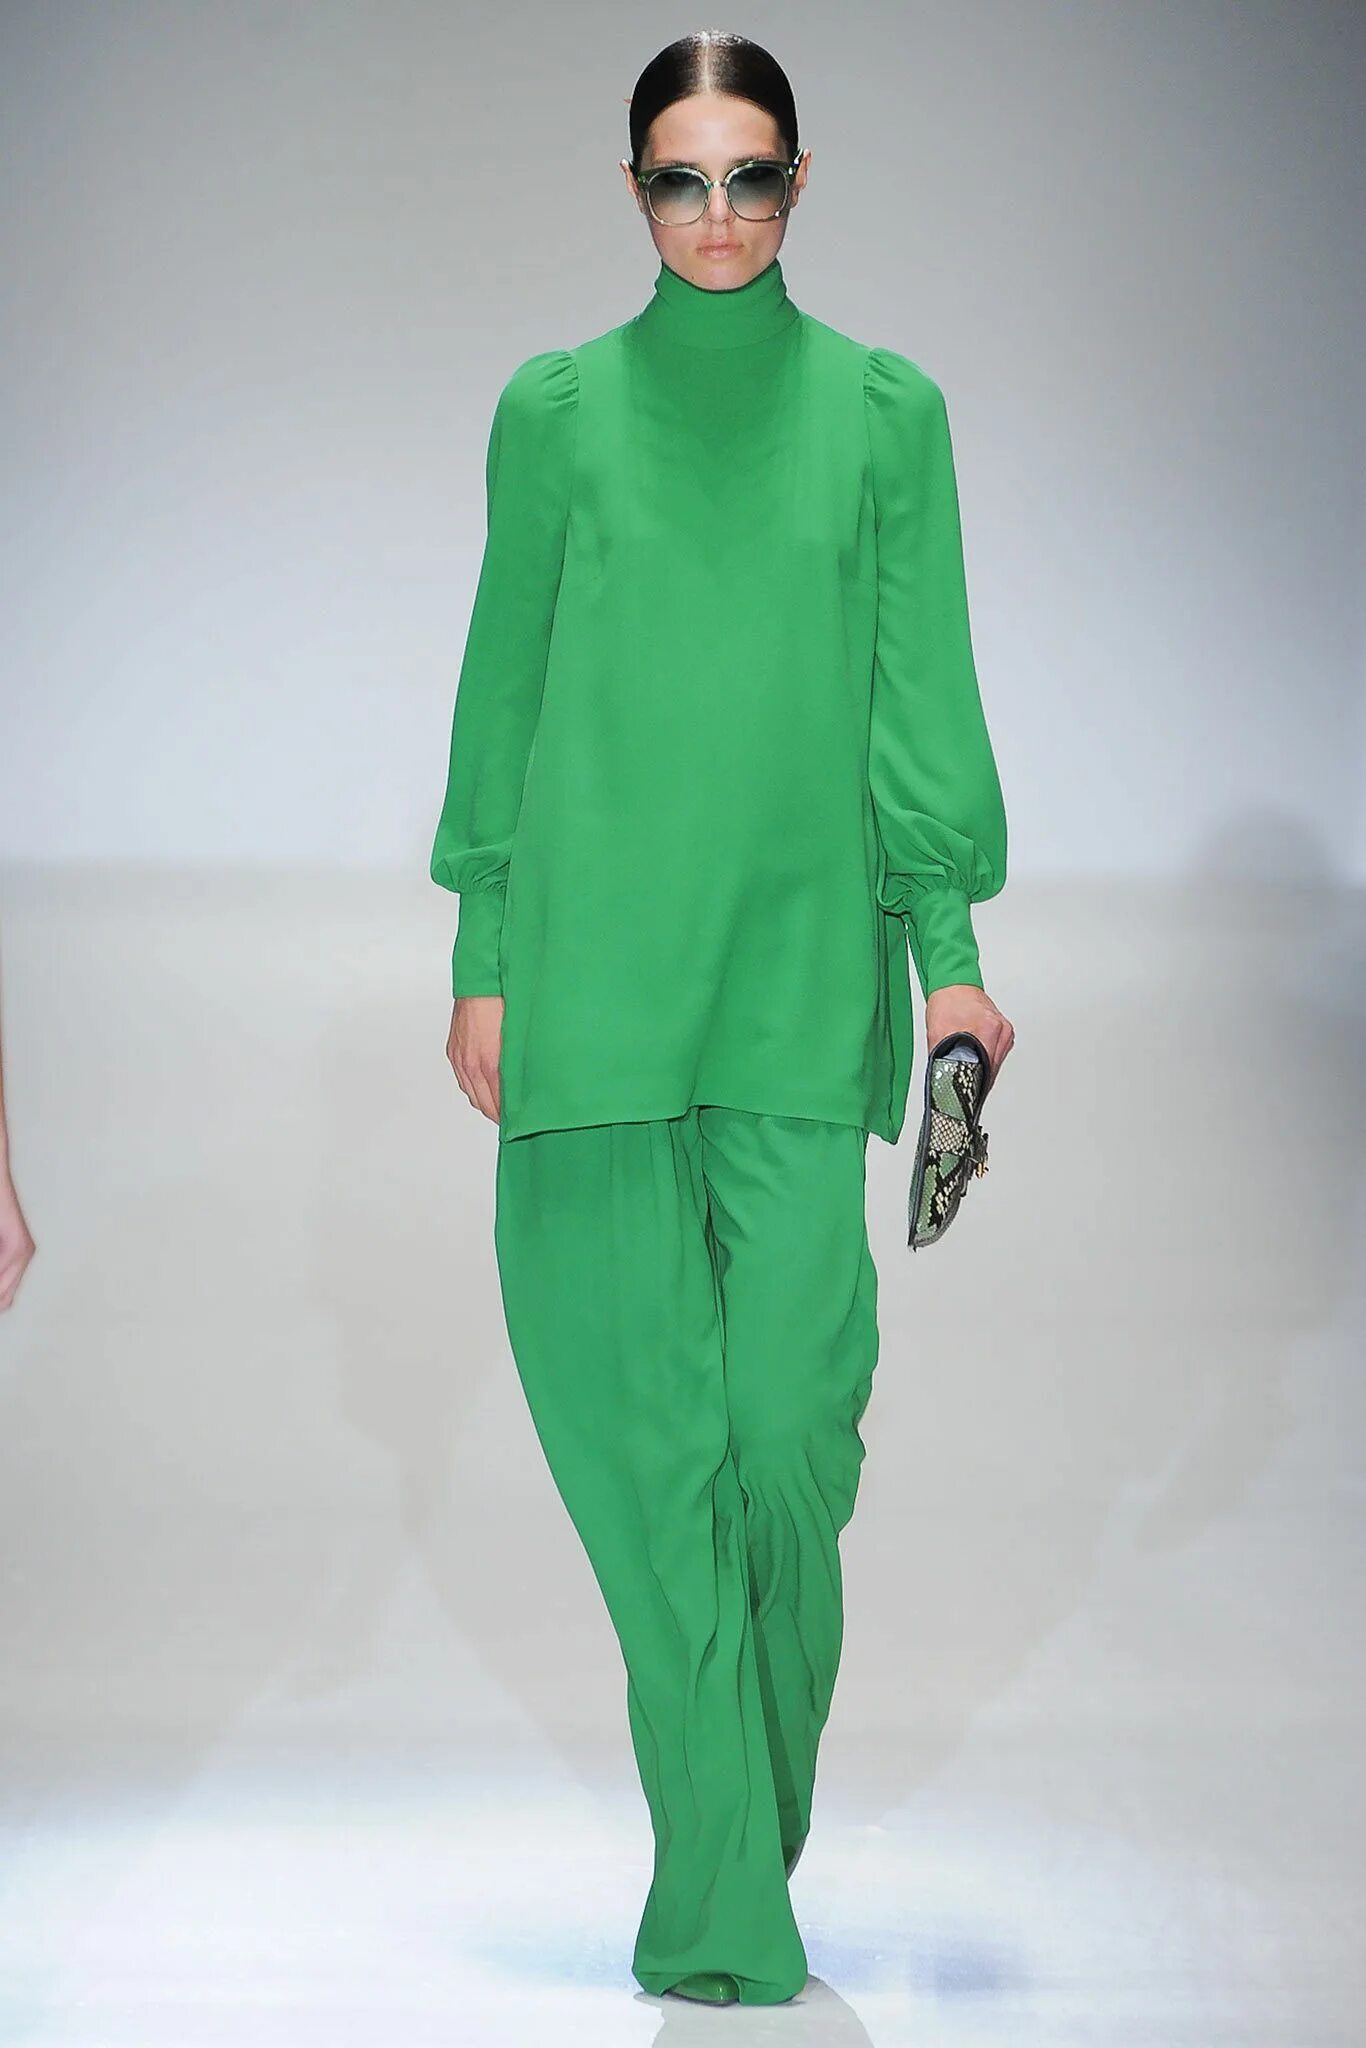 Greening mod. Зеленая коллекция/гуччи 2023. Изумрудный цвет в одежде. Одежда в зеленых тонах.